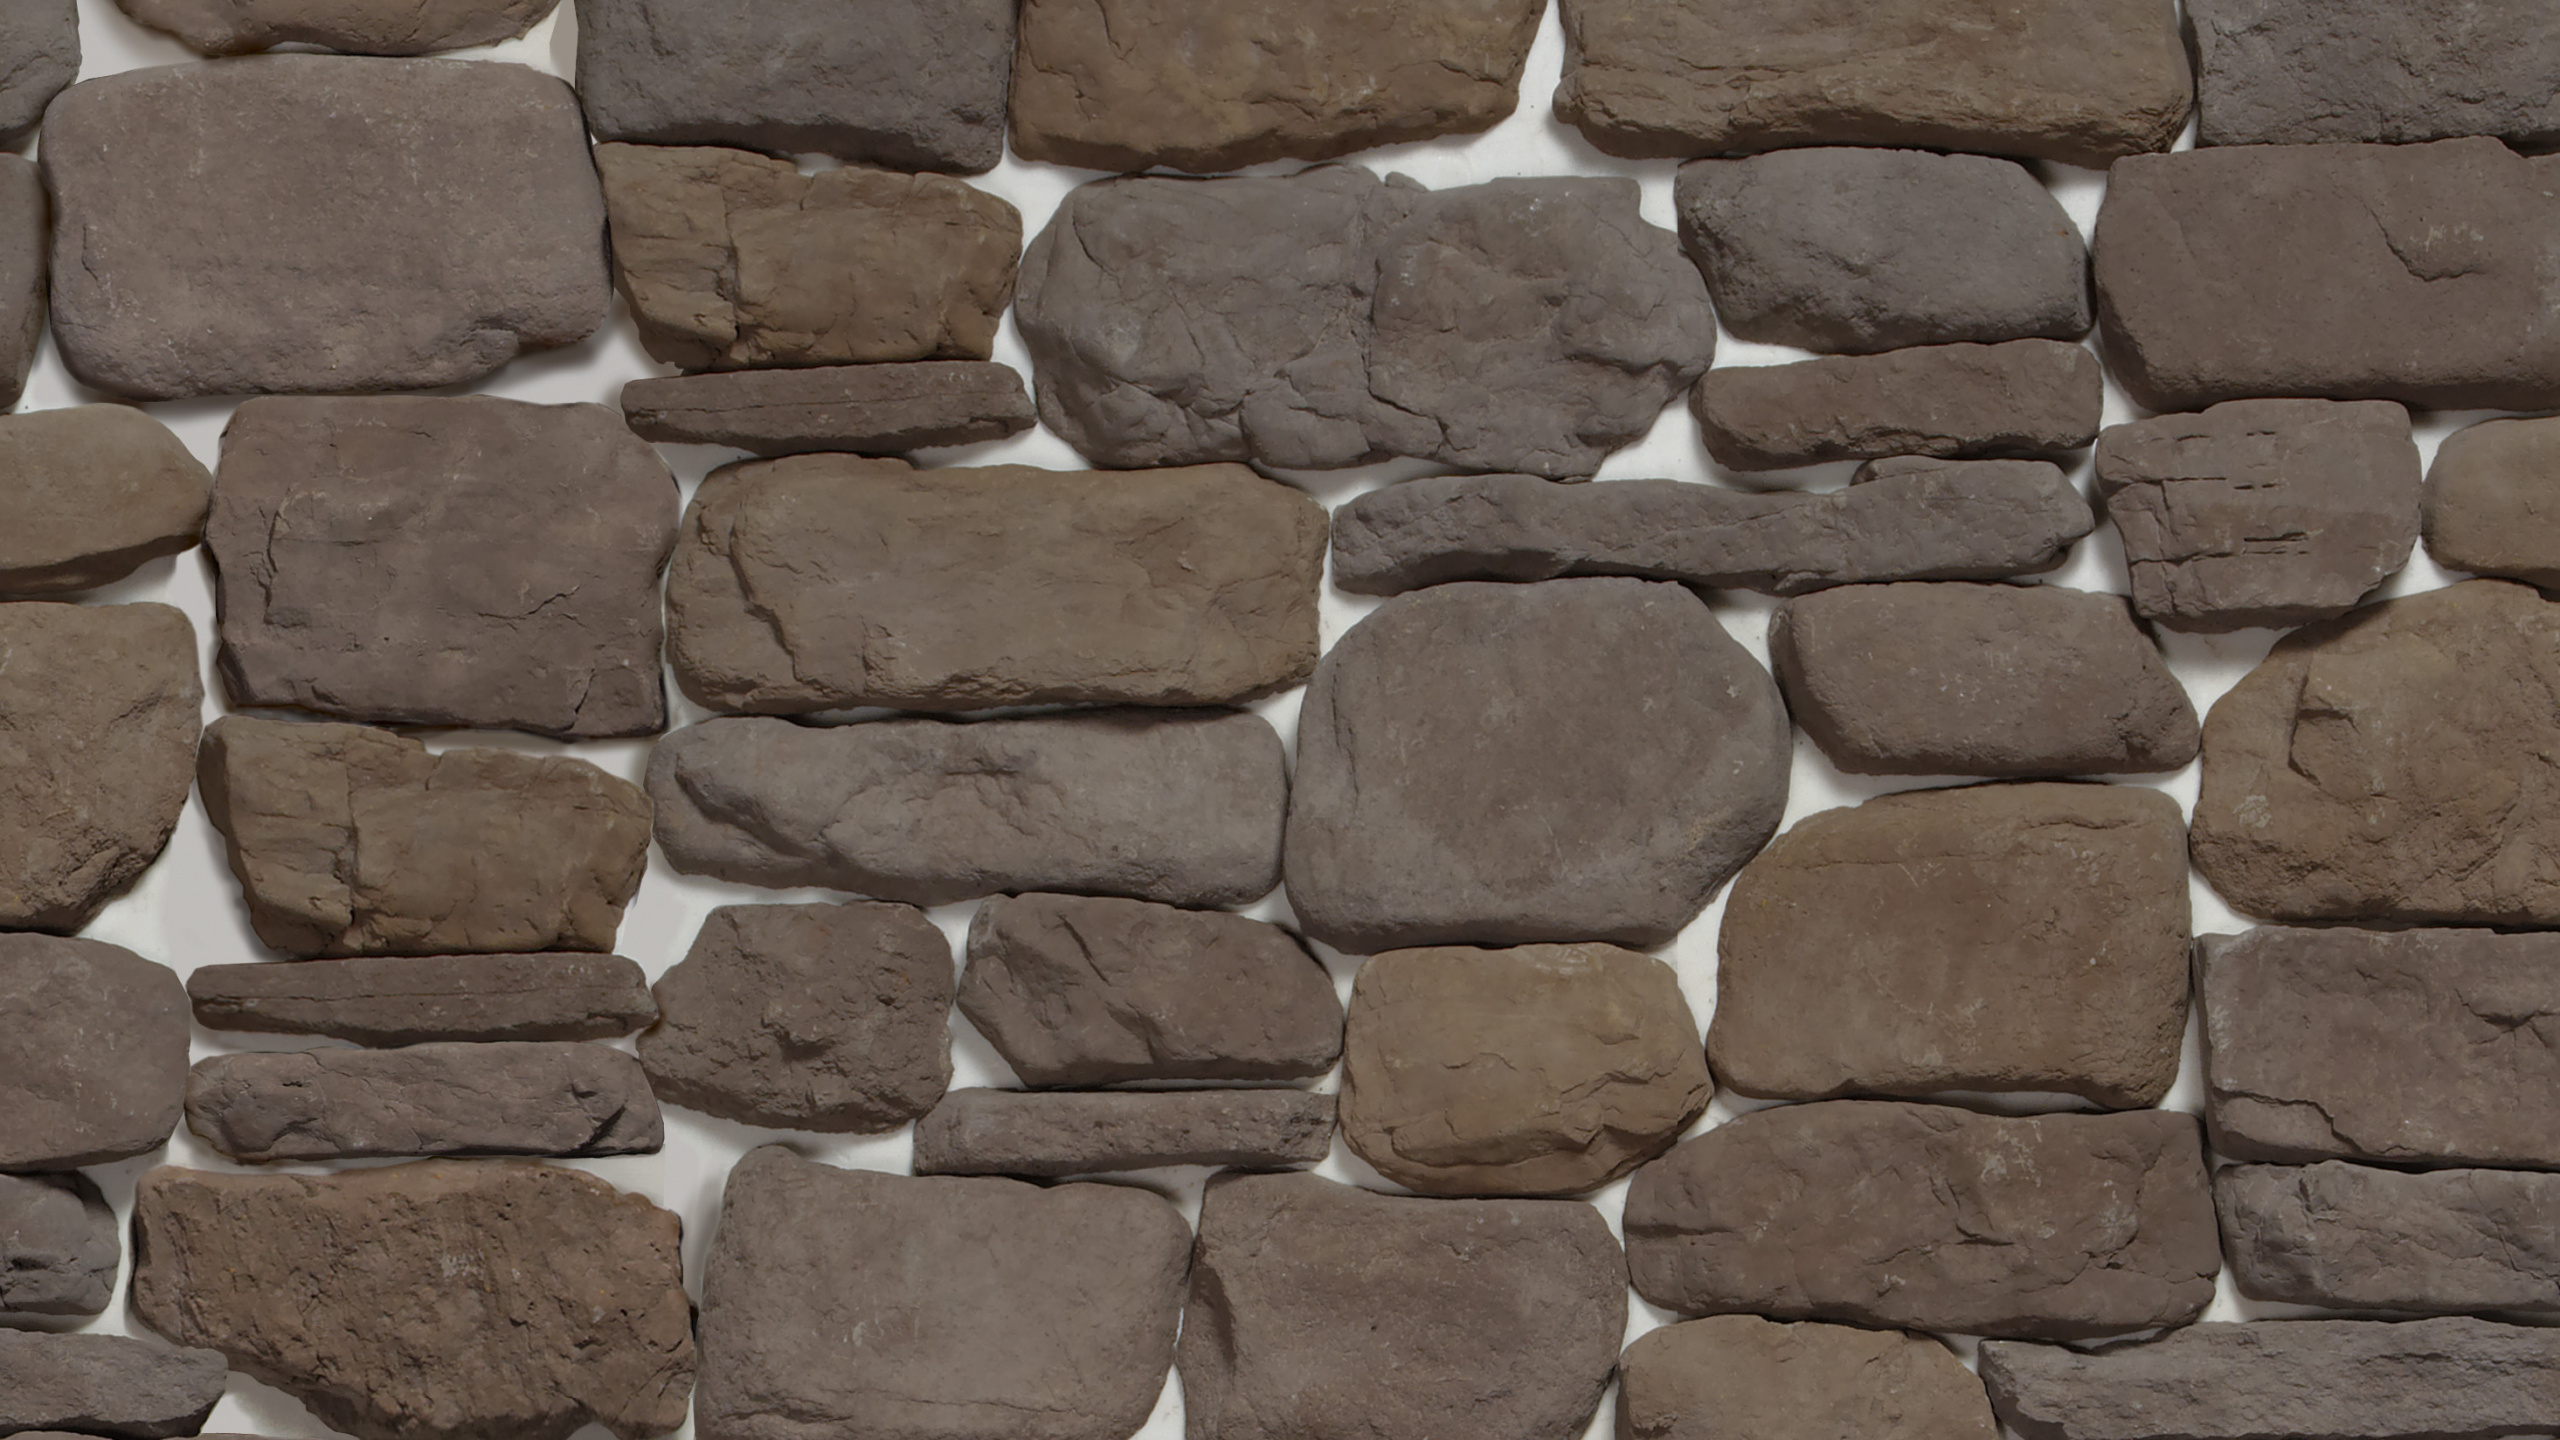 石壁, 人造石, 复, 砖, 鹅卵石 壁纸 2560x1440 允许